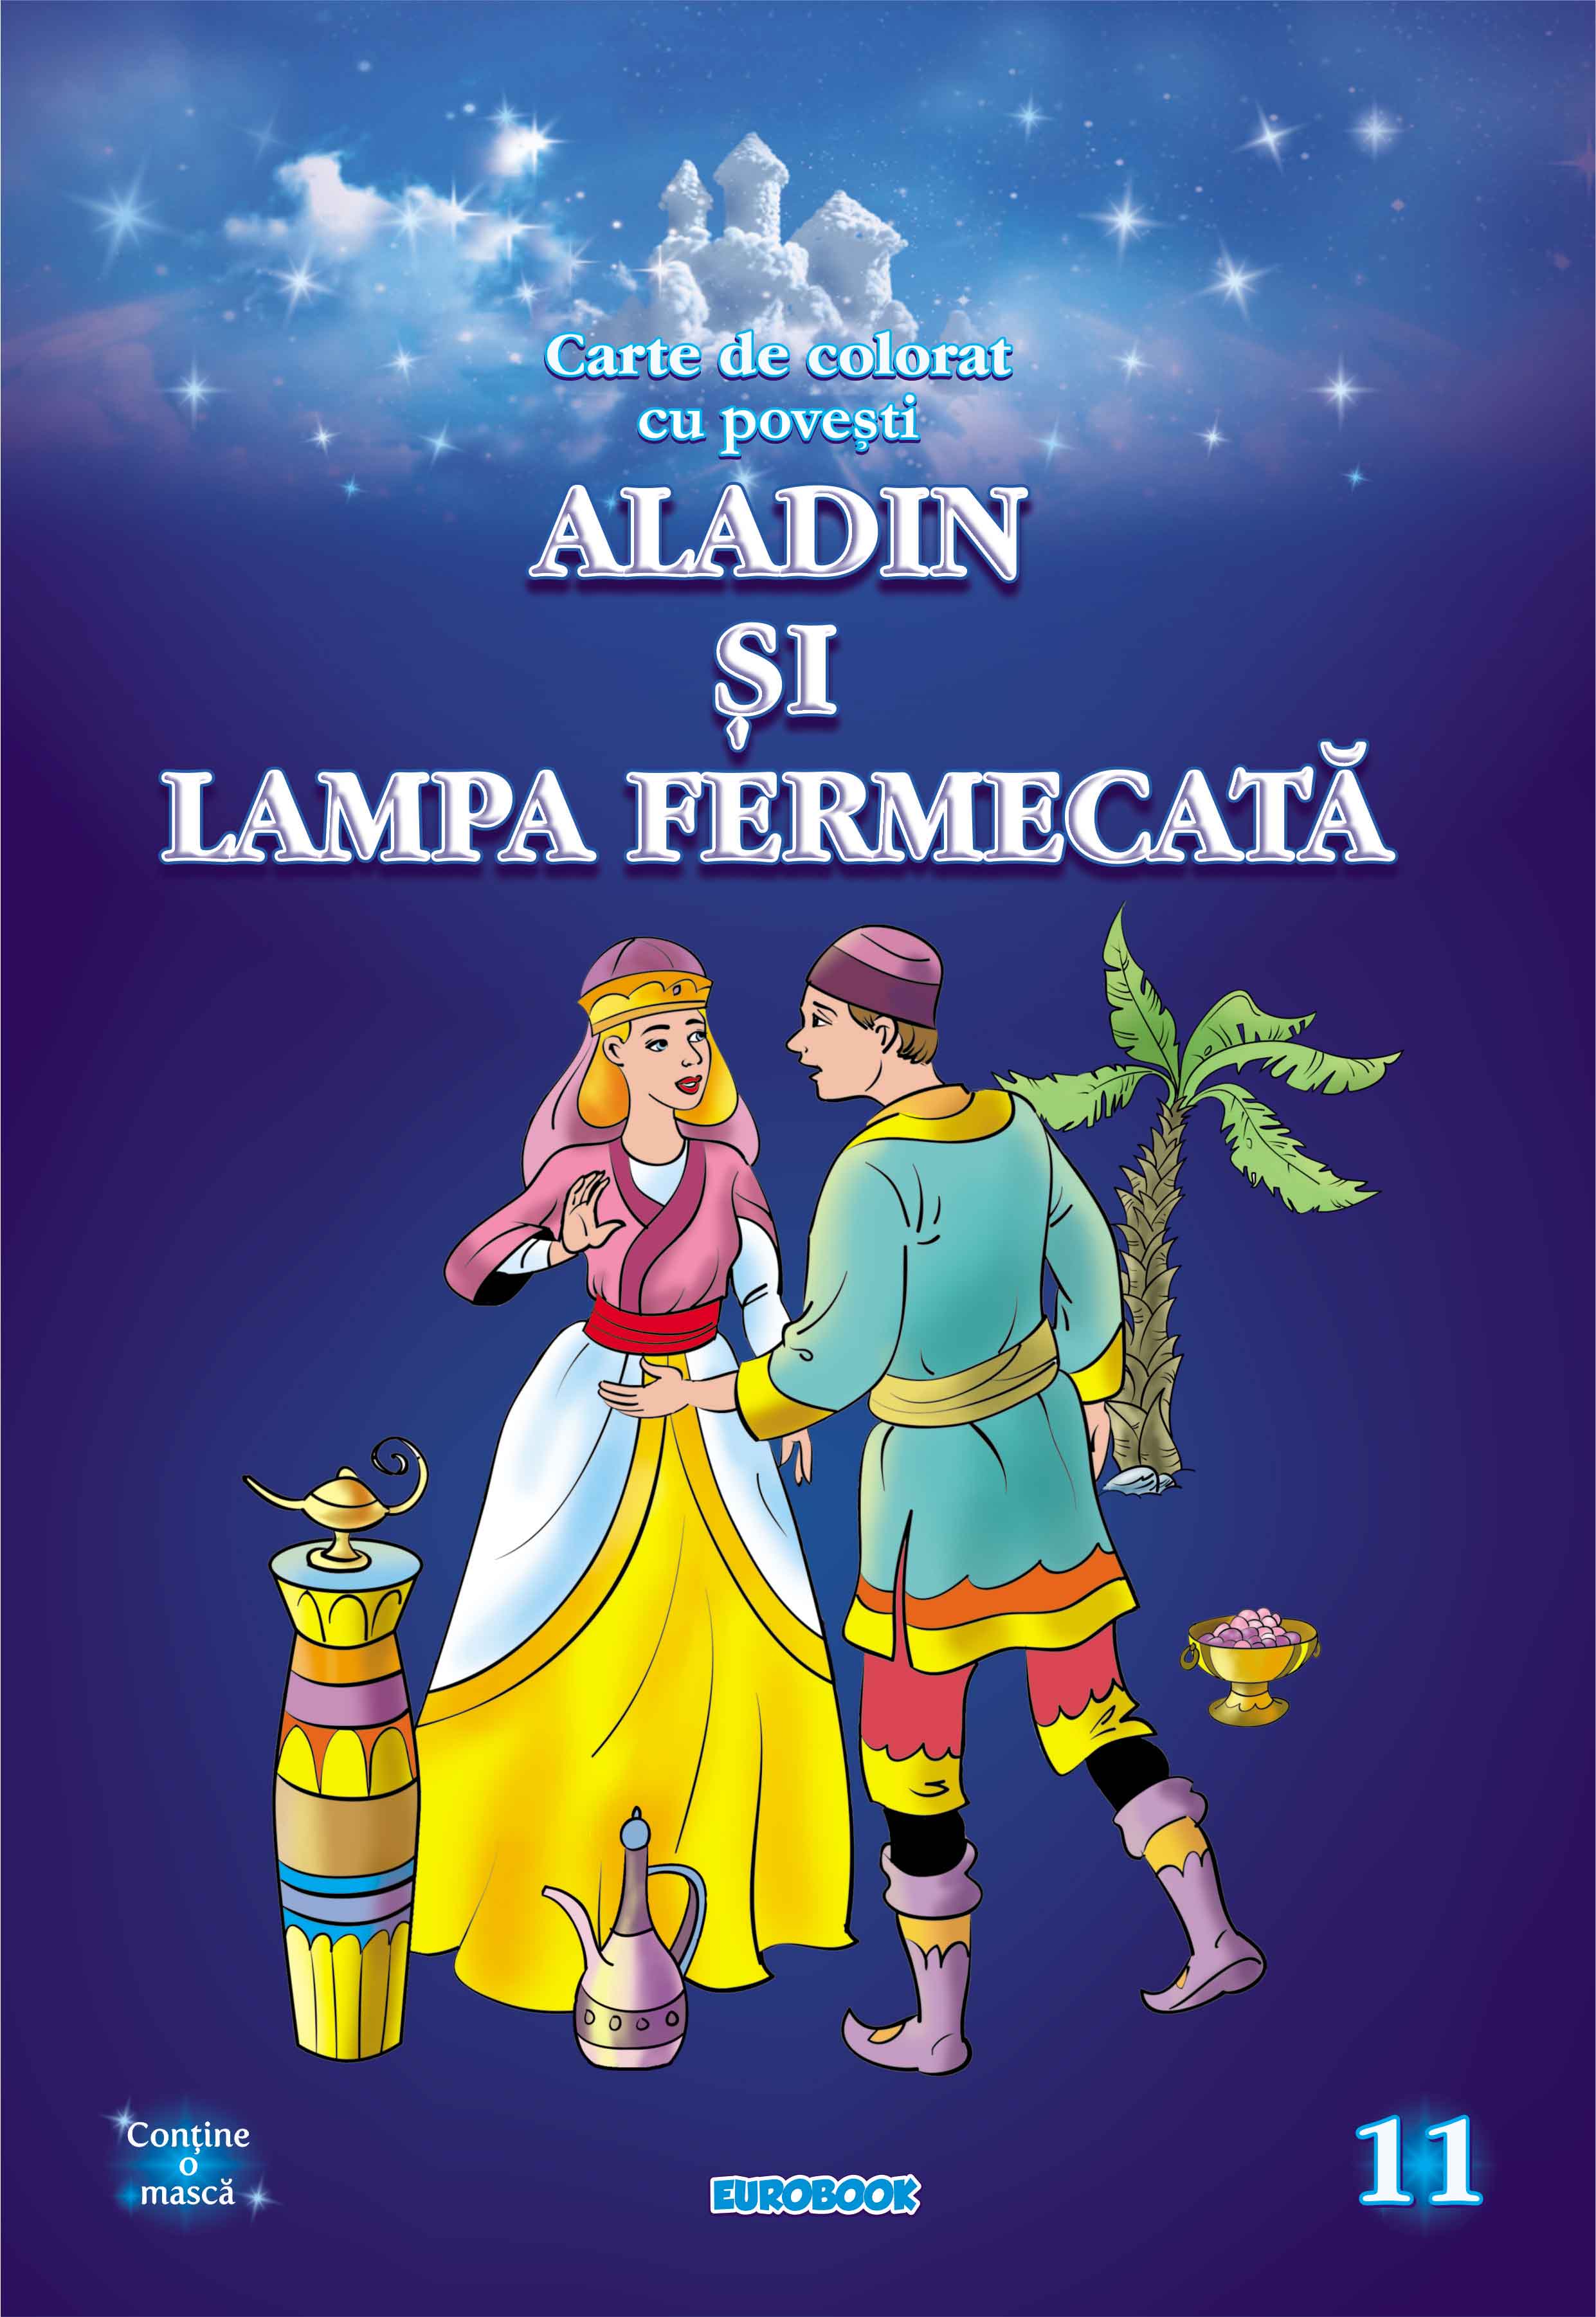 Aladin si lampa fermecata. Carte de colorat cu povesti